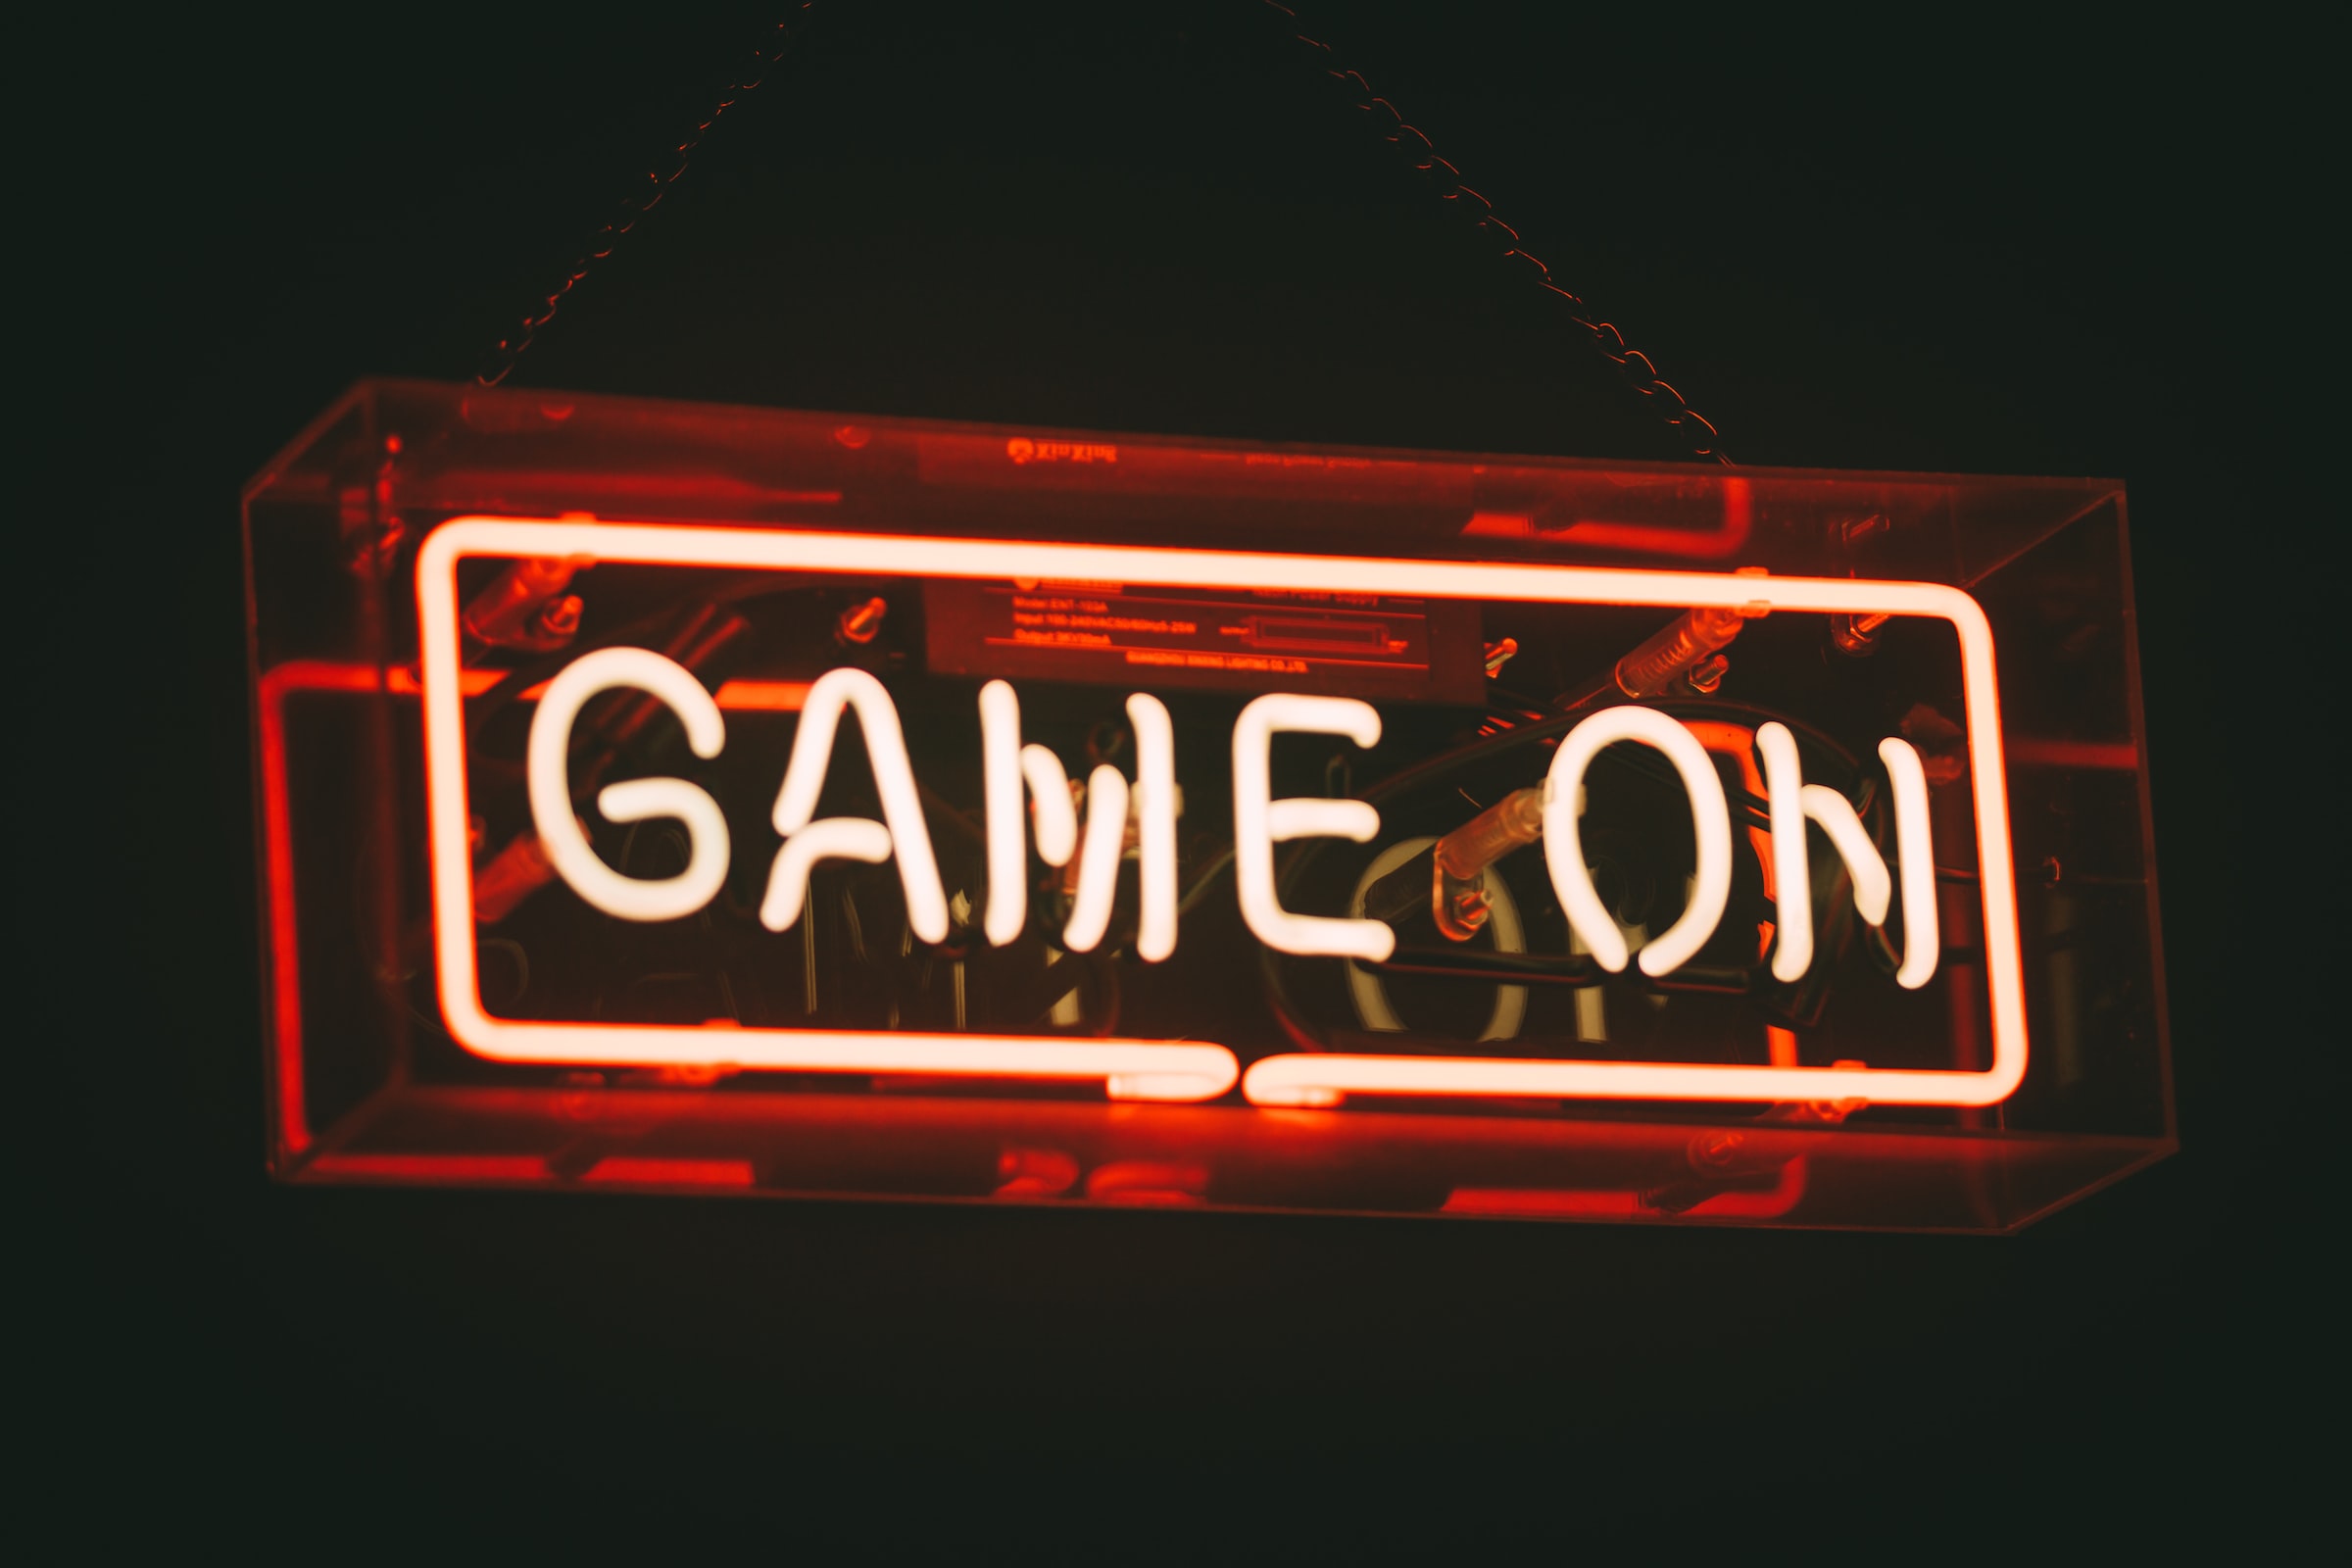 Прозрачный прямоугольник на черном фоне со светодиодной подсветкой, на нем написано “Game on”.